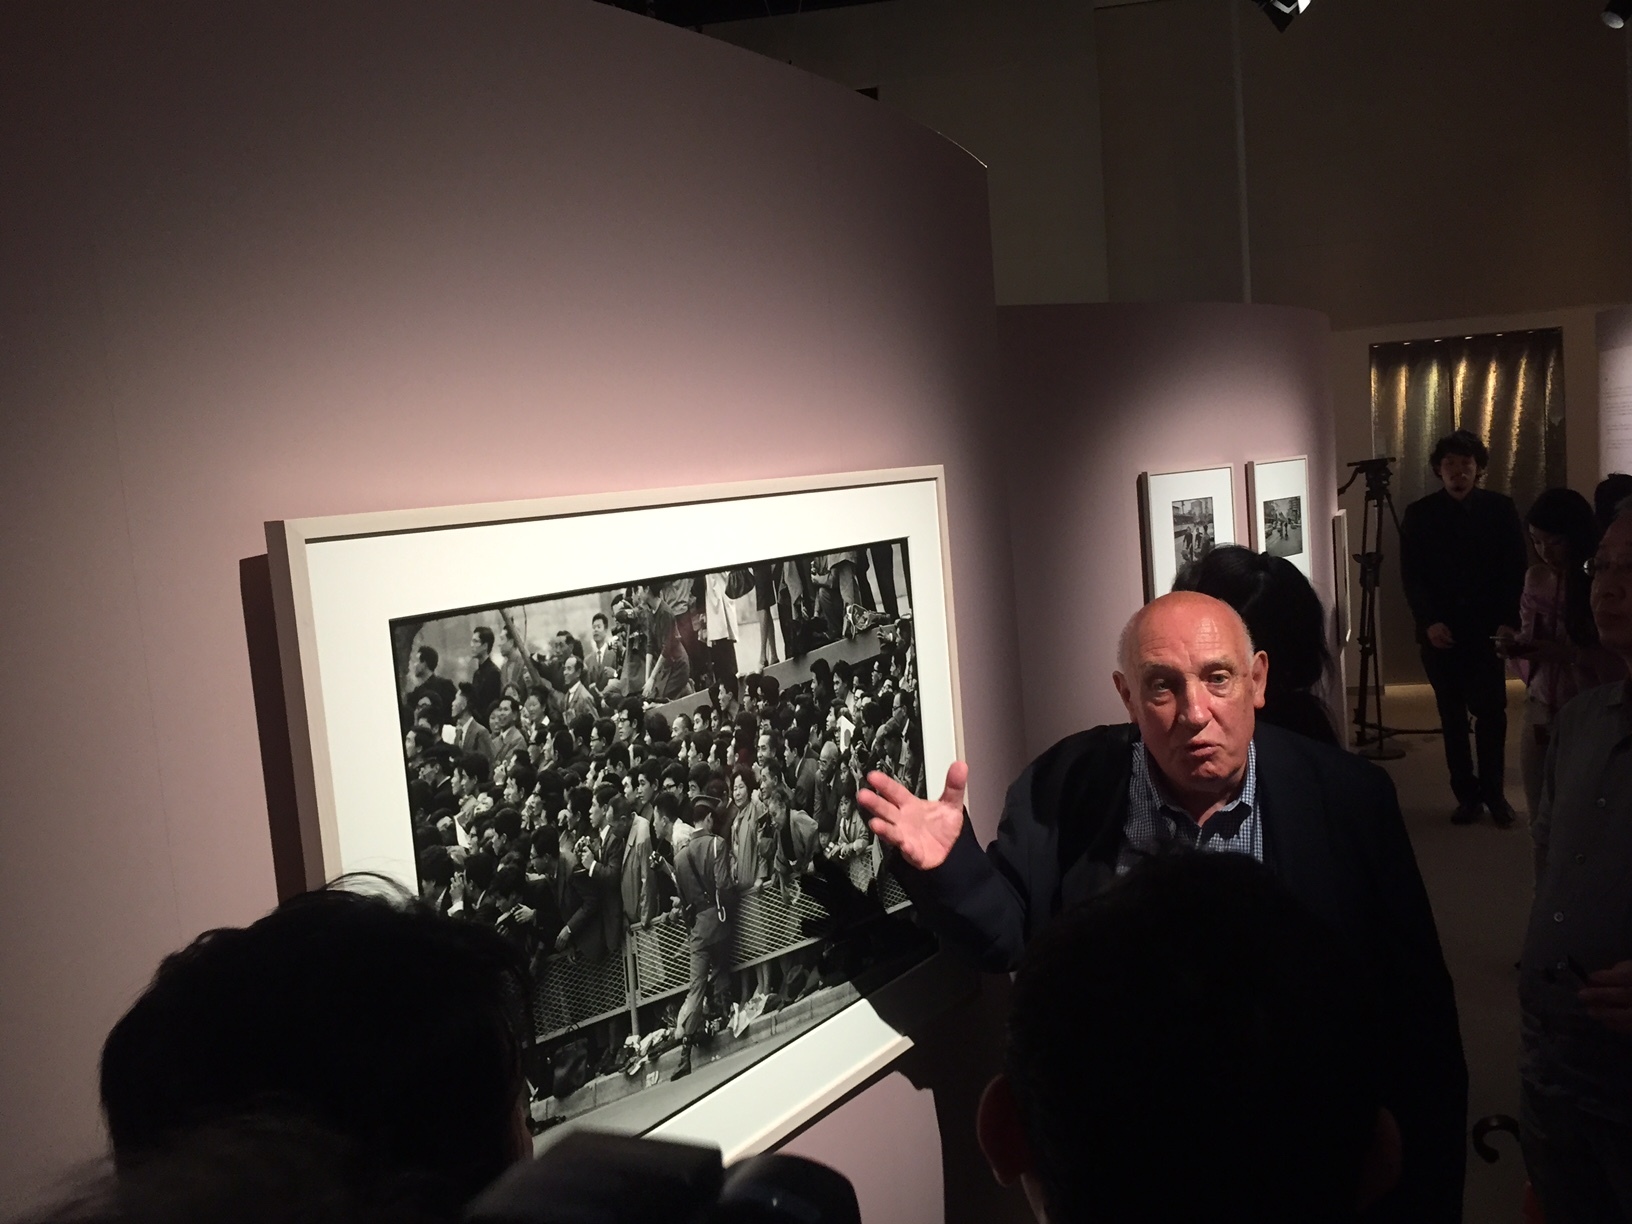 1964年に撮影された写真について語る、ドゥパルトン。「本作は競技写真ではないが、フレーム外の光景を映した一枚。いろんな国の選手を見たい、という日本の人々の好奇心が伝わってくる素晴らしい写真だ」と語った。